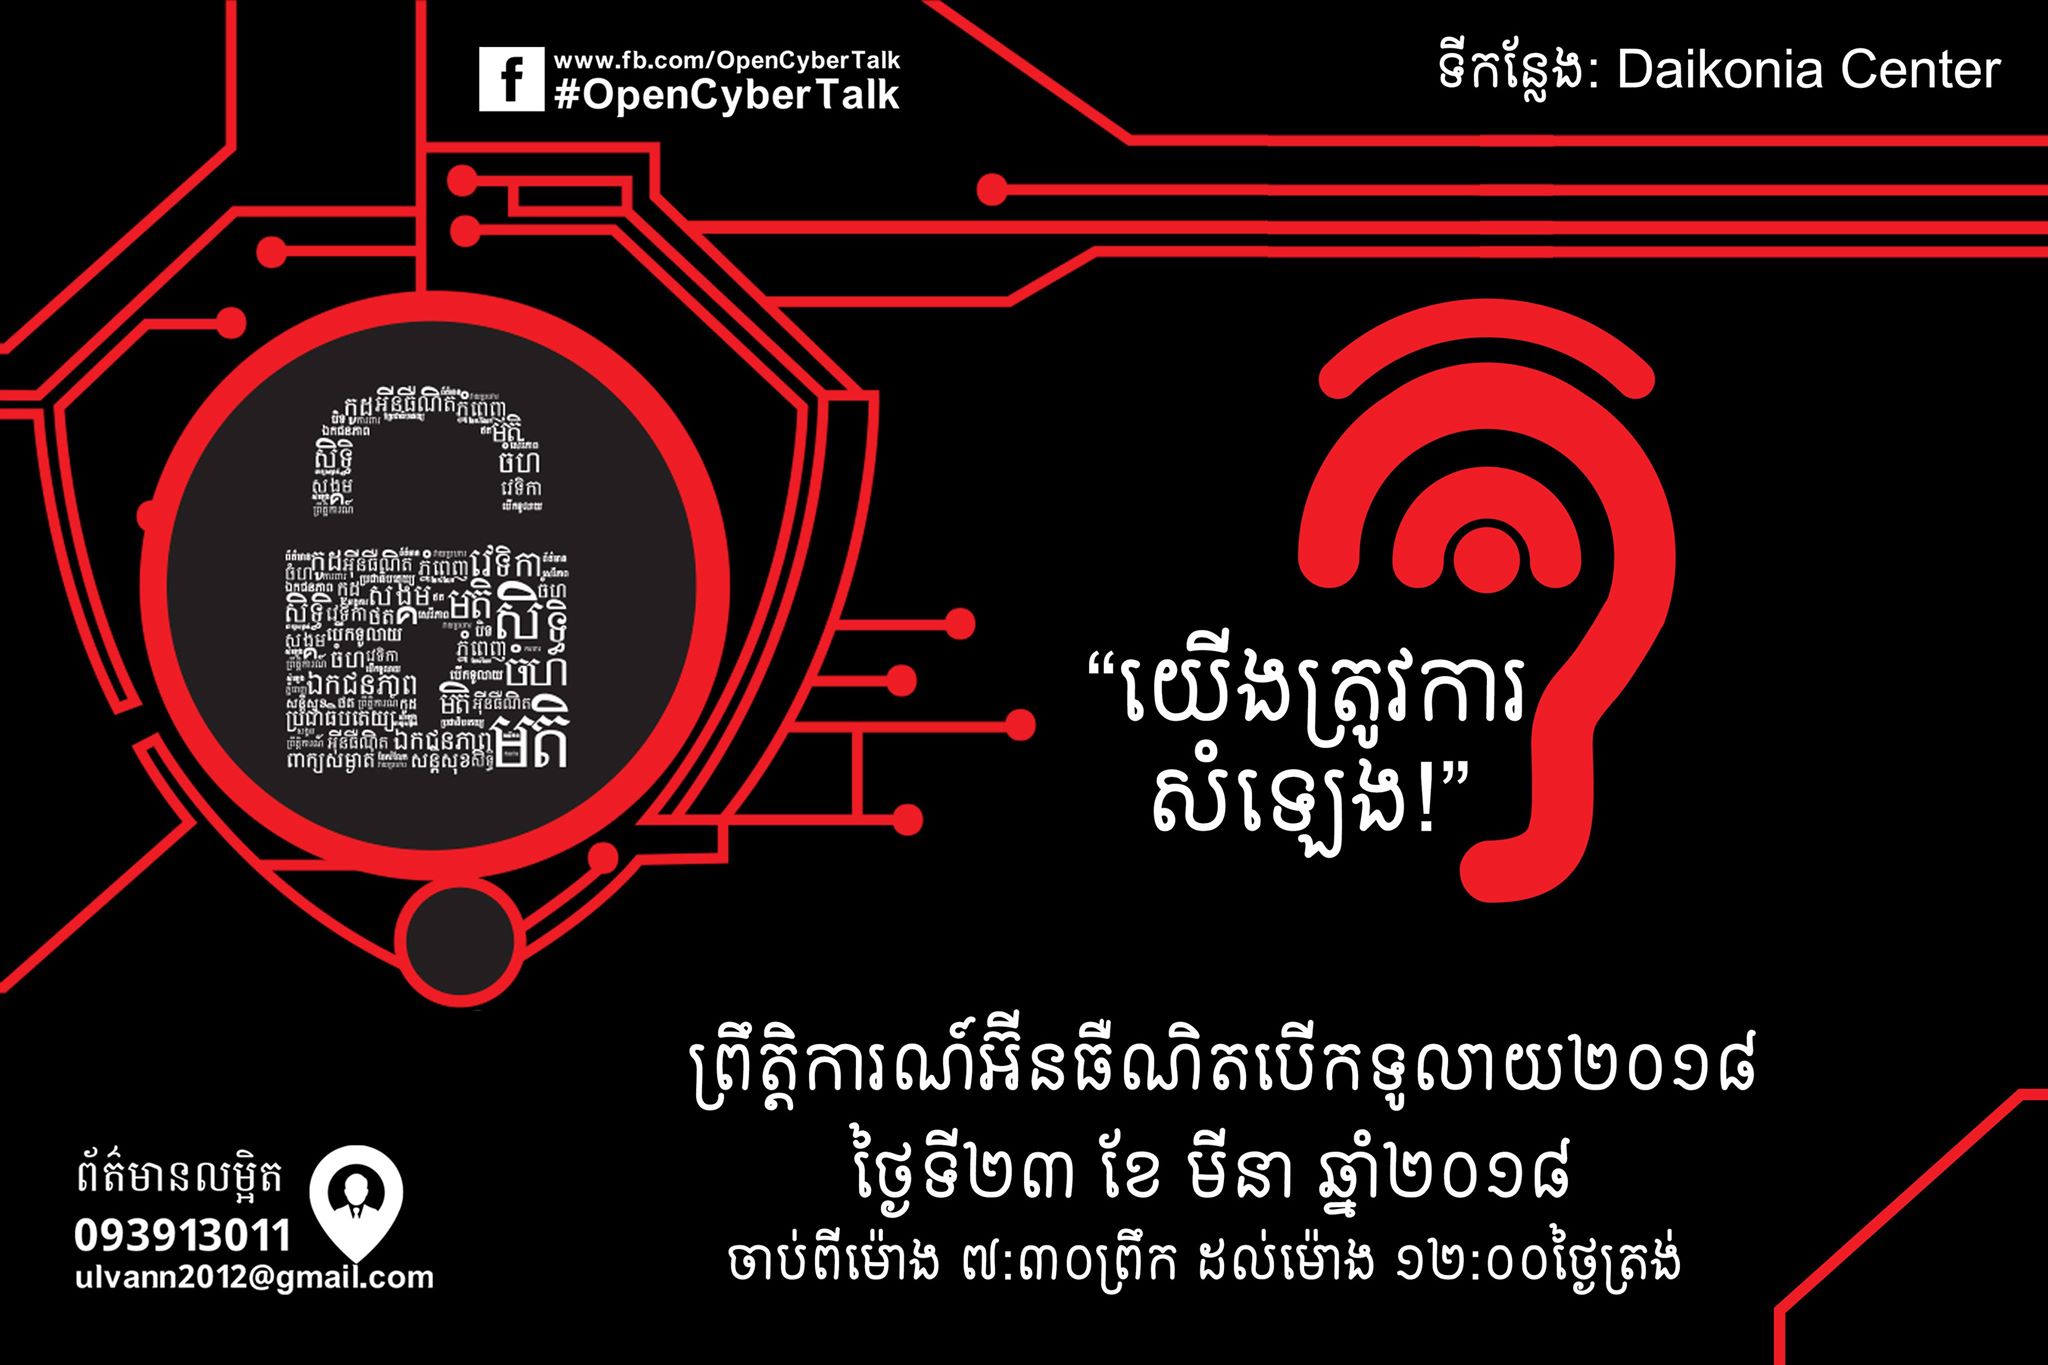 ព្រឹត្តិការណ៍​អ៊ីនធឺណិត​បើក​ទូលាយ ២០១៨ (Open Cyber Talk 2018)។